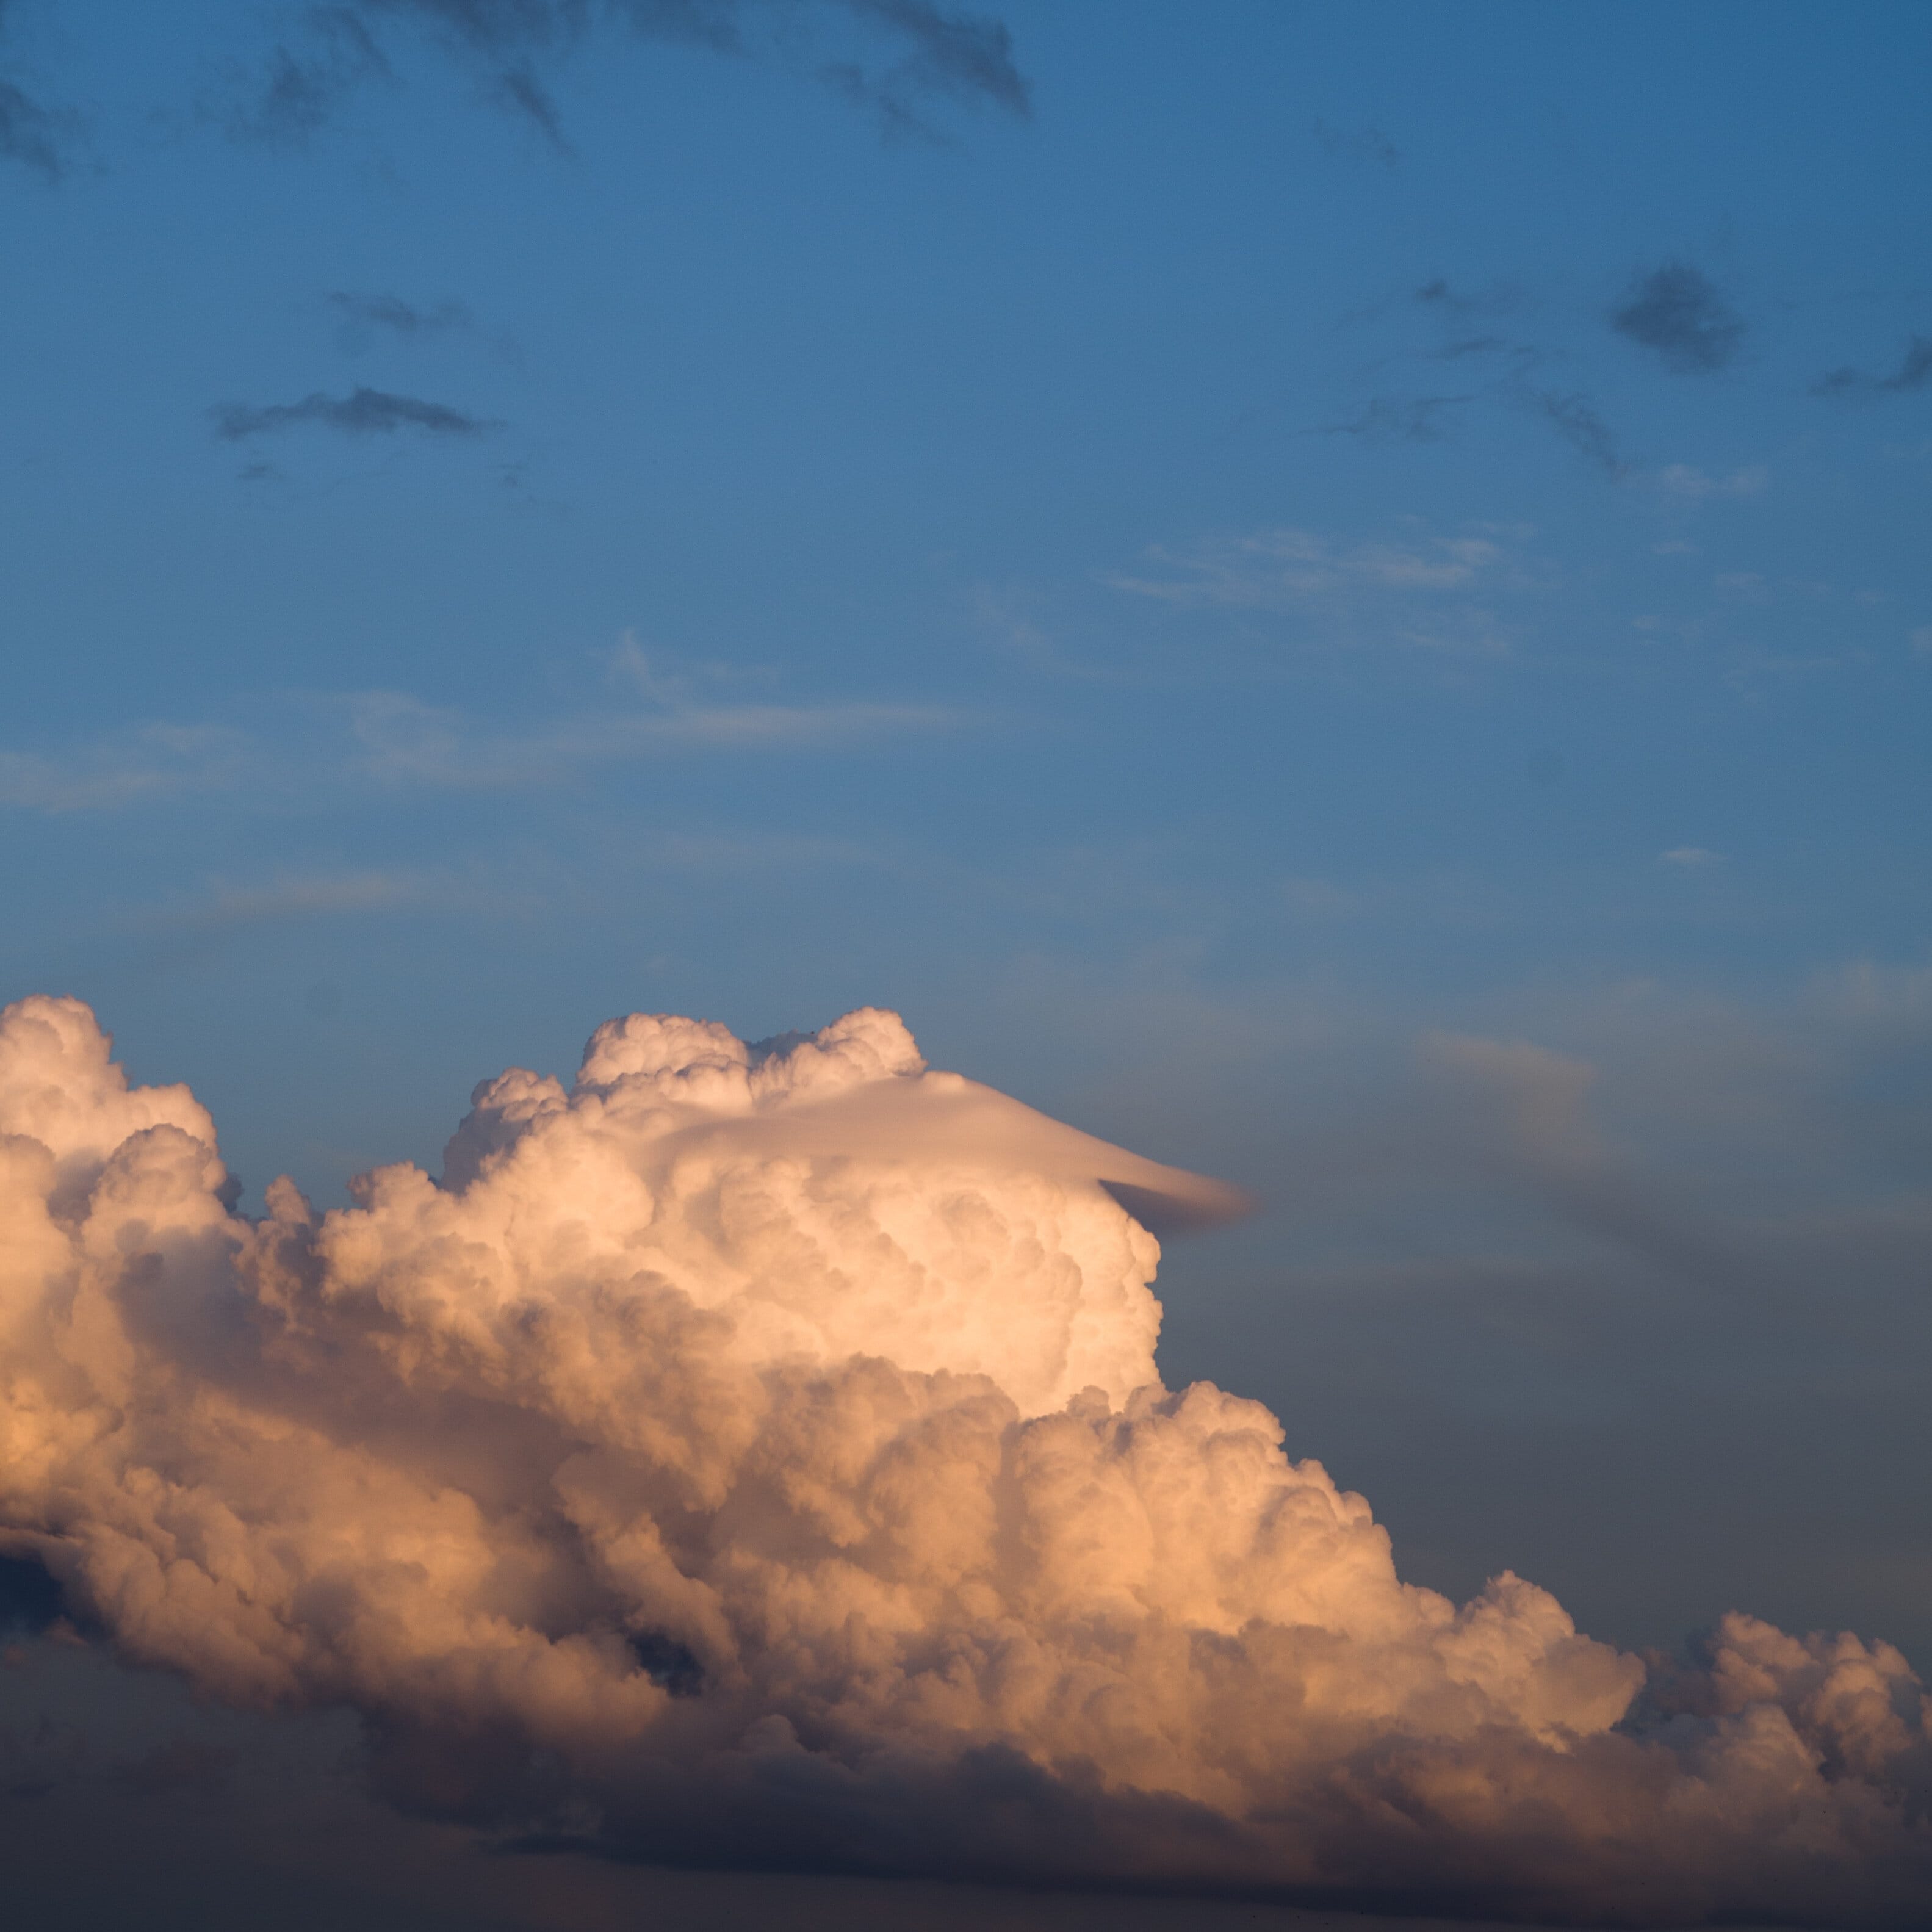 Pileus coiffant un cumulus dans le ciel de Nantes en fin d'après-midi - 22/10/2020 18:55 - Frédéric GATELET